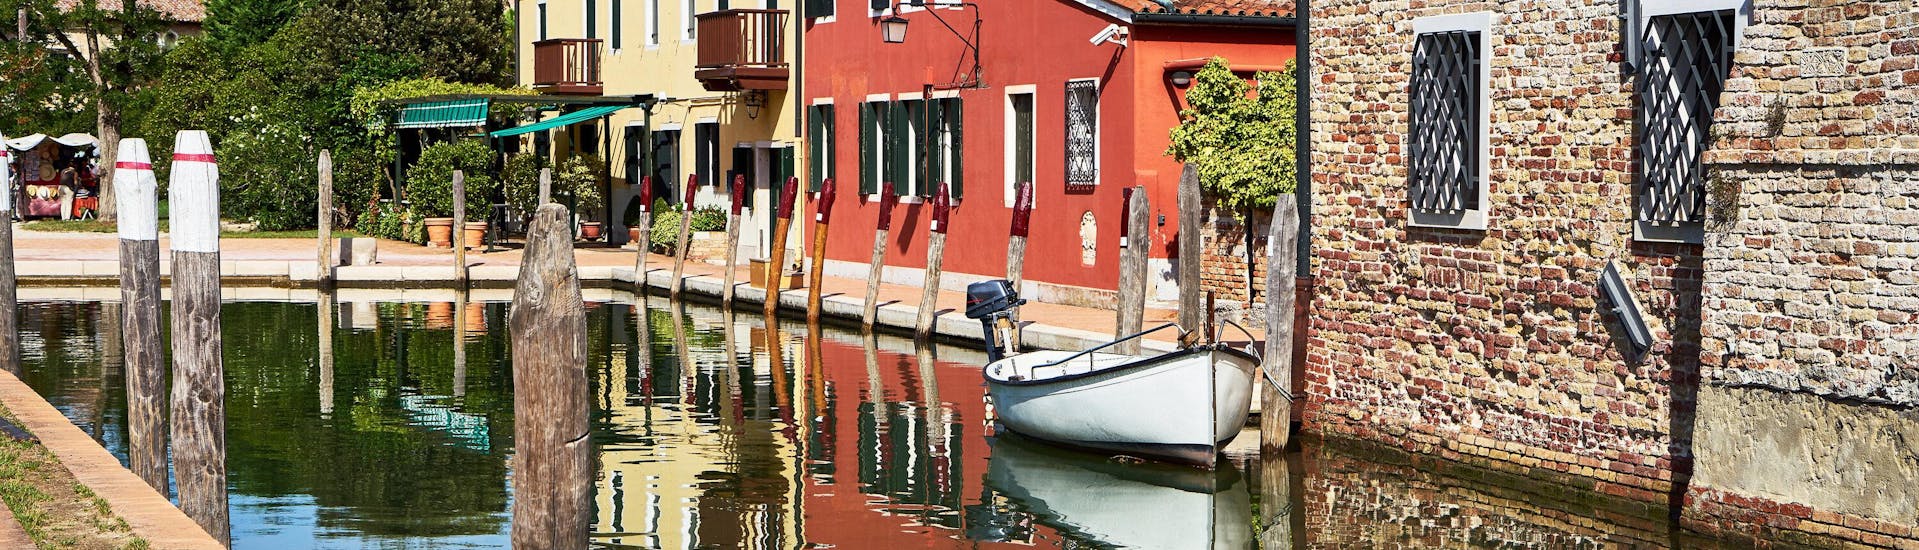 Un barco en el canal durante una excursión en barco a Torcello.